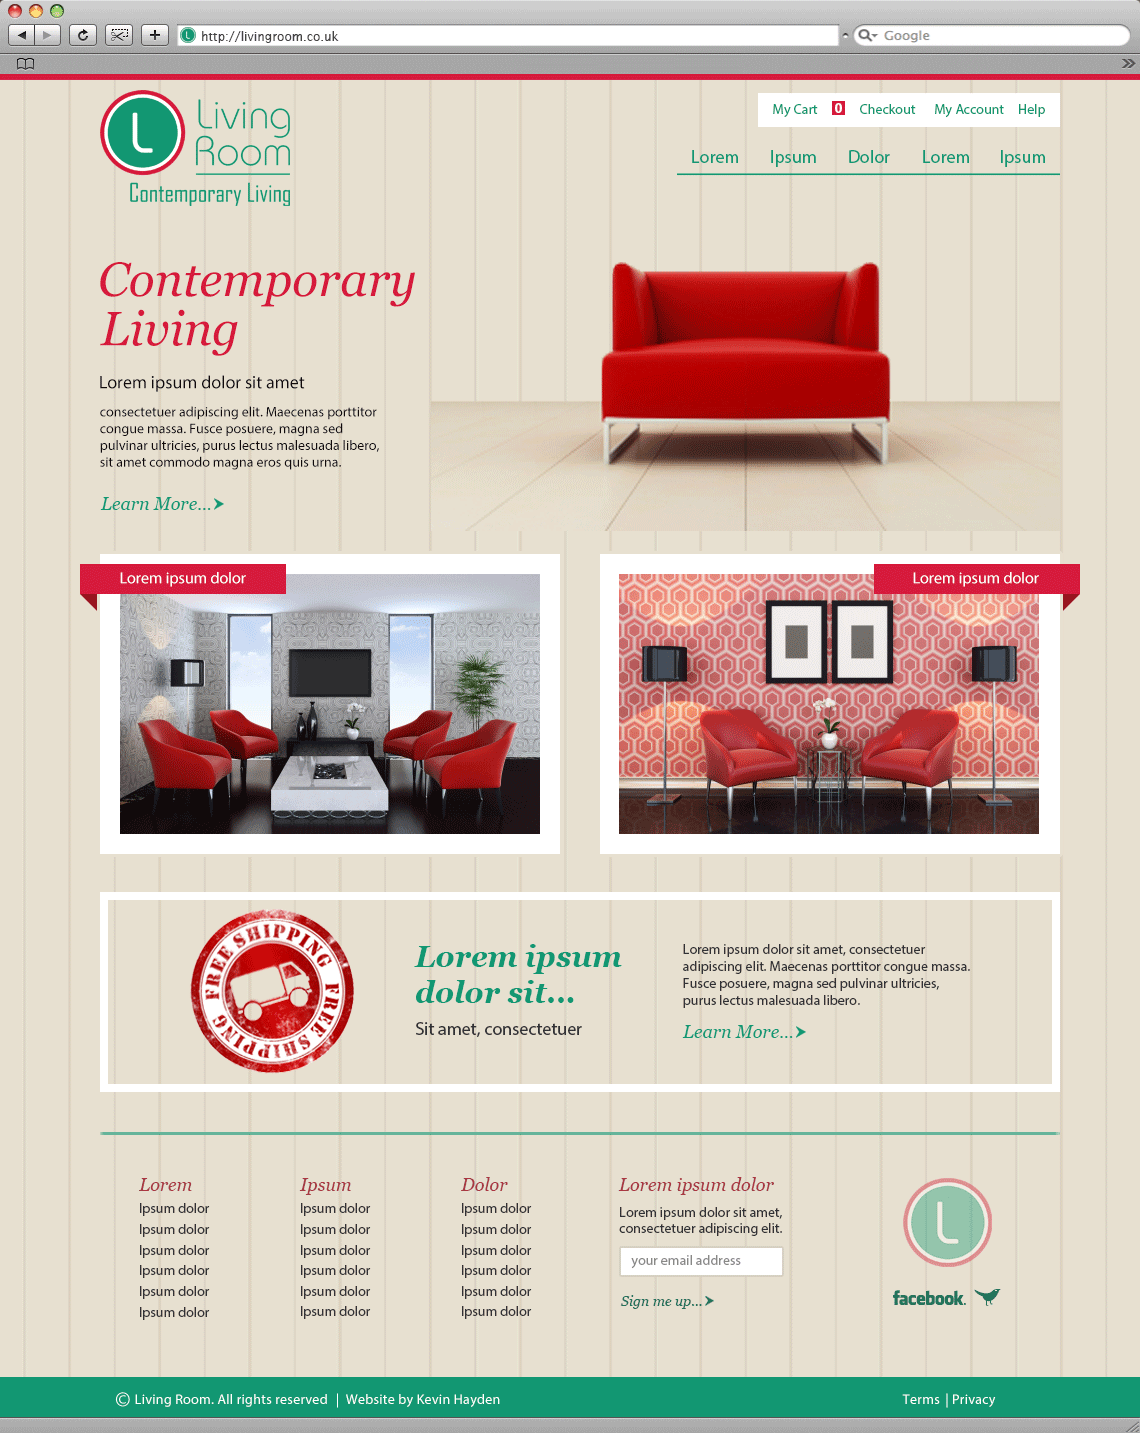 Living Room website image.